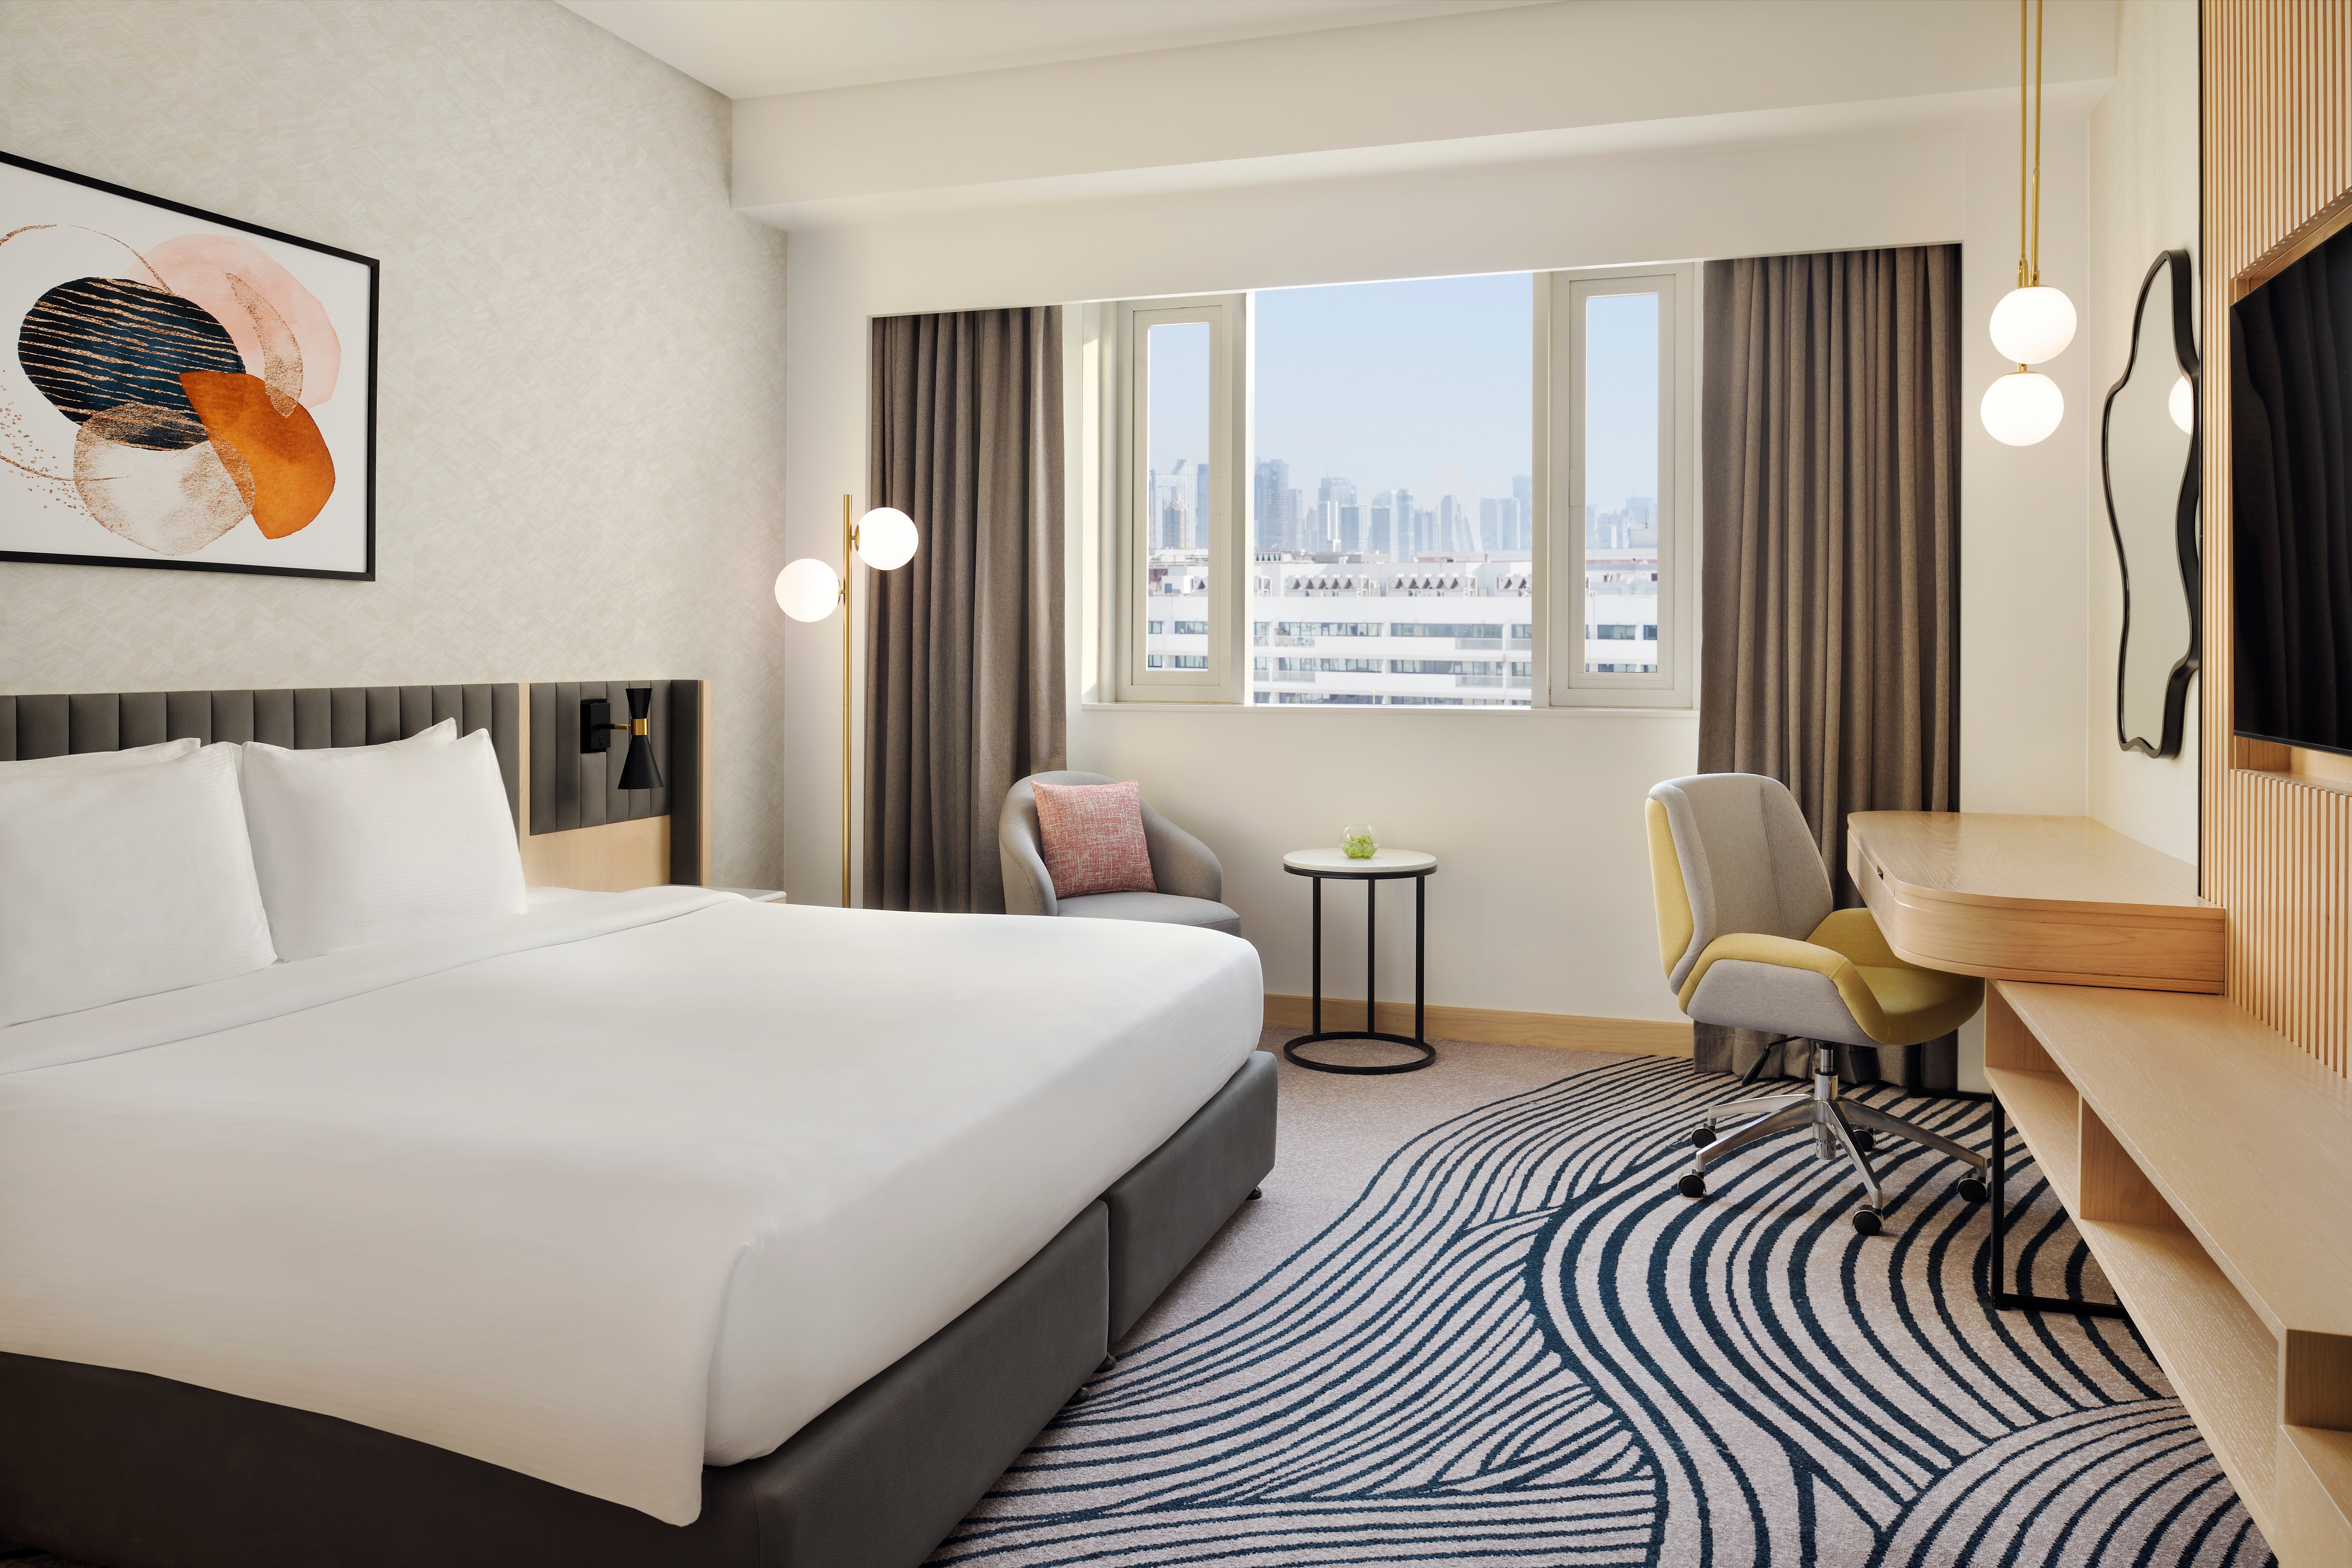 Enjoy incredible views and stylish rooms at the Crowne Plaza Dubai Jumeirah Hotel